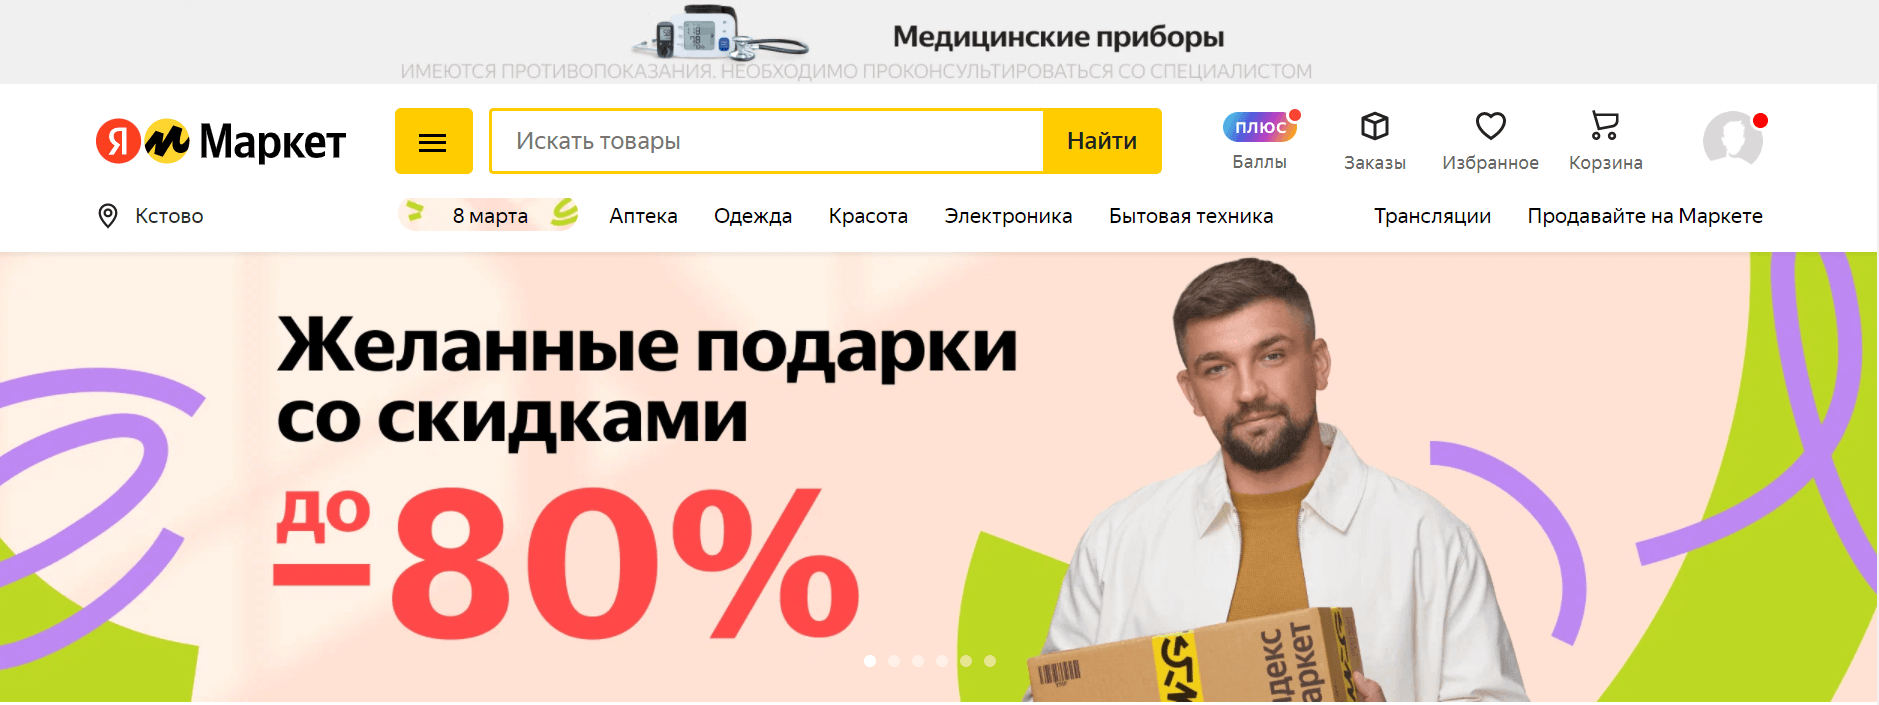 Главная страница «Яндекс.Маркета»